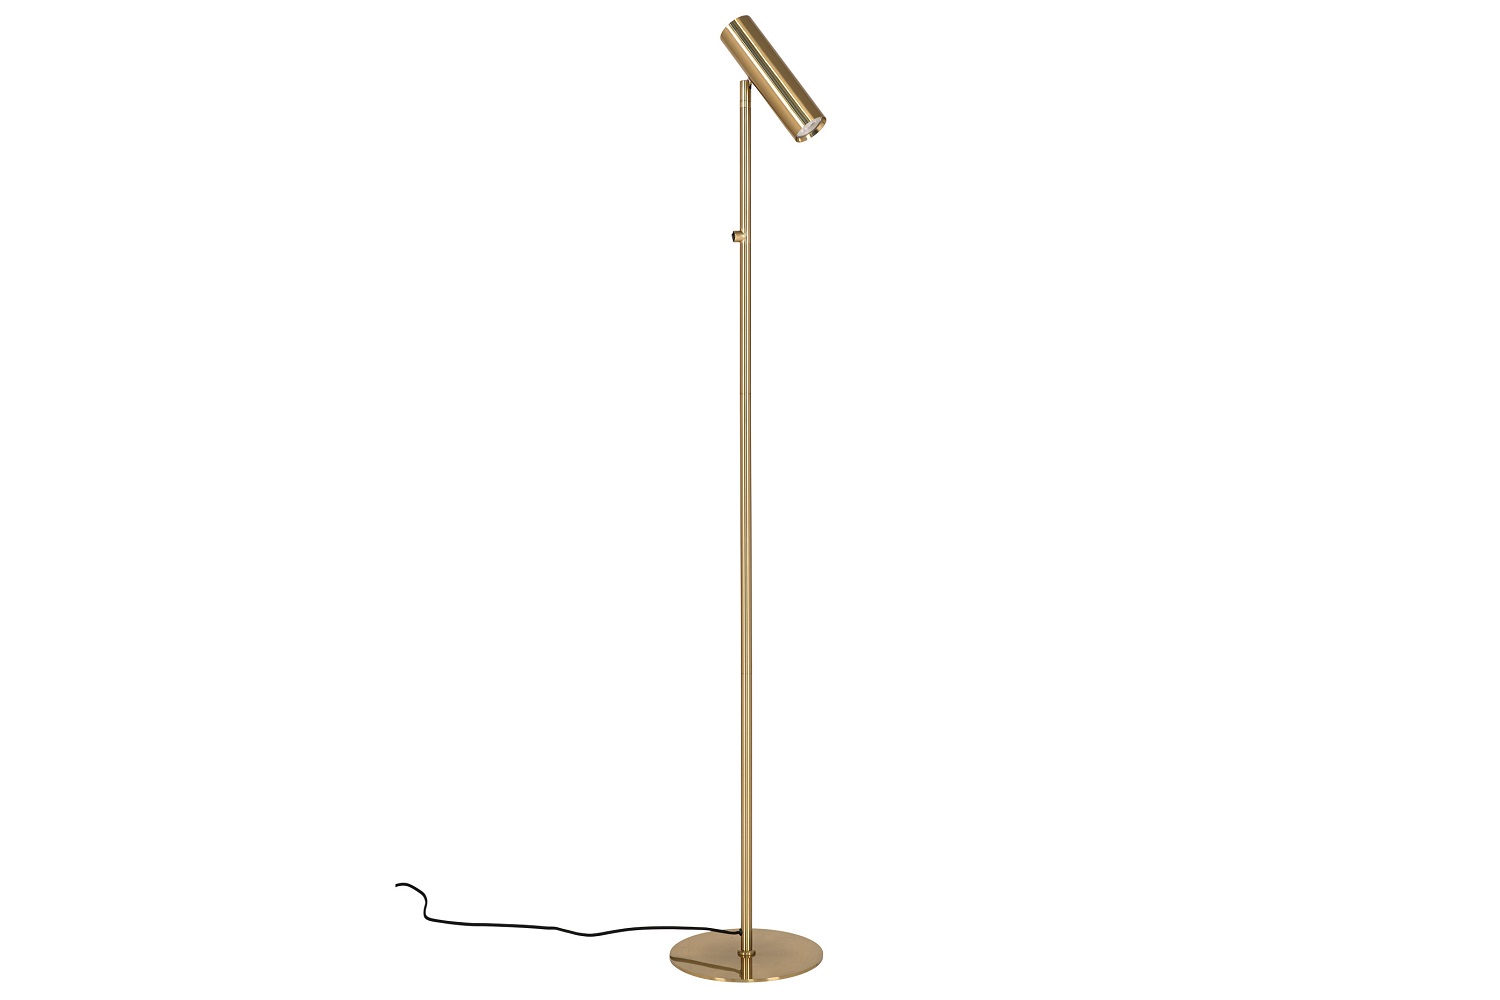 Norddan 26117 Designová stojanová lampa Rapha mosaz